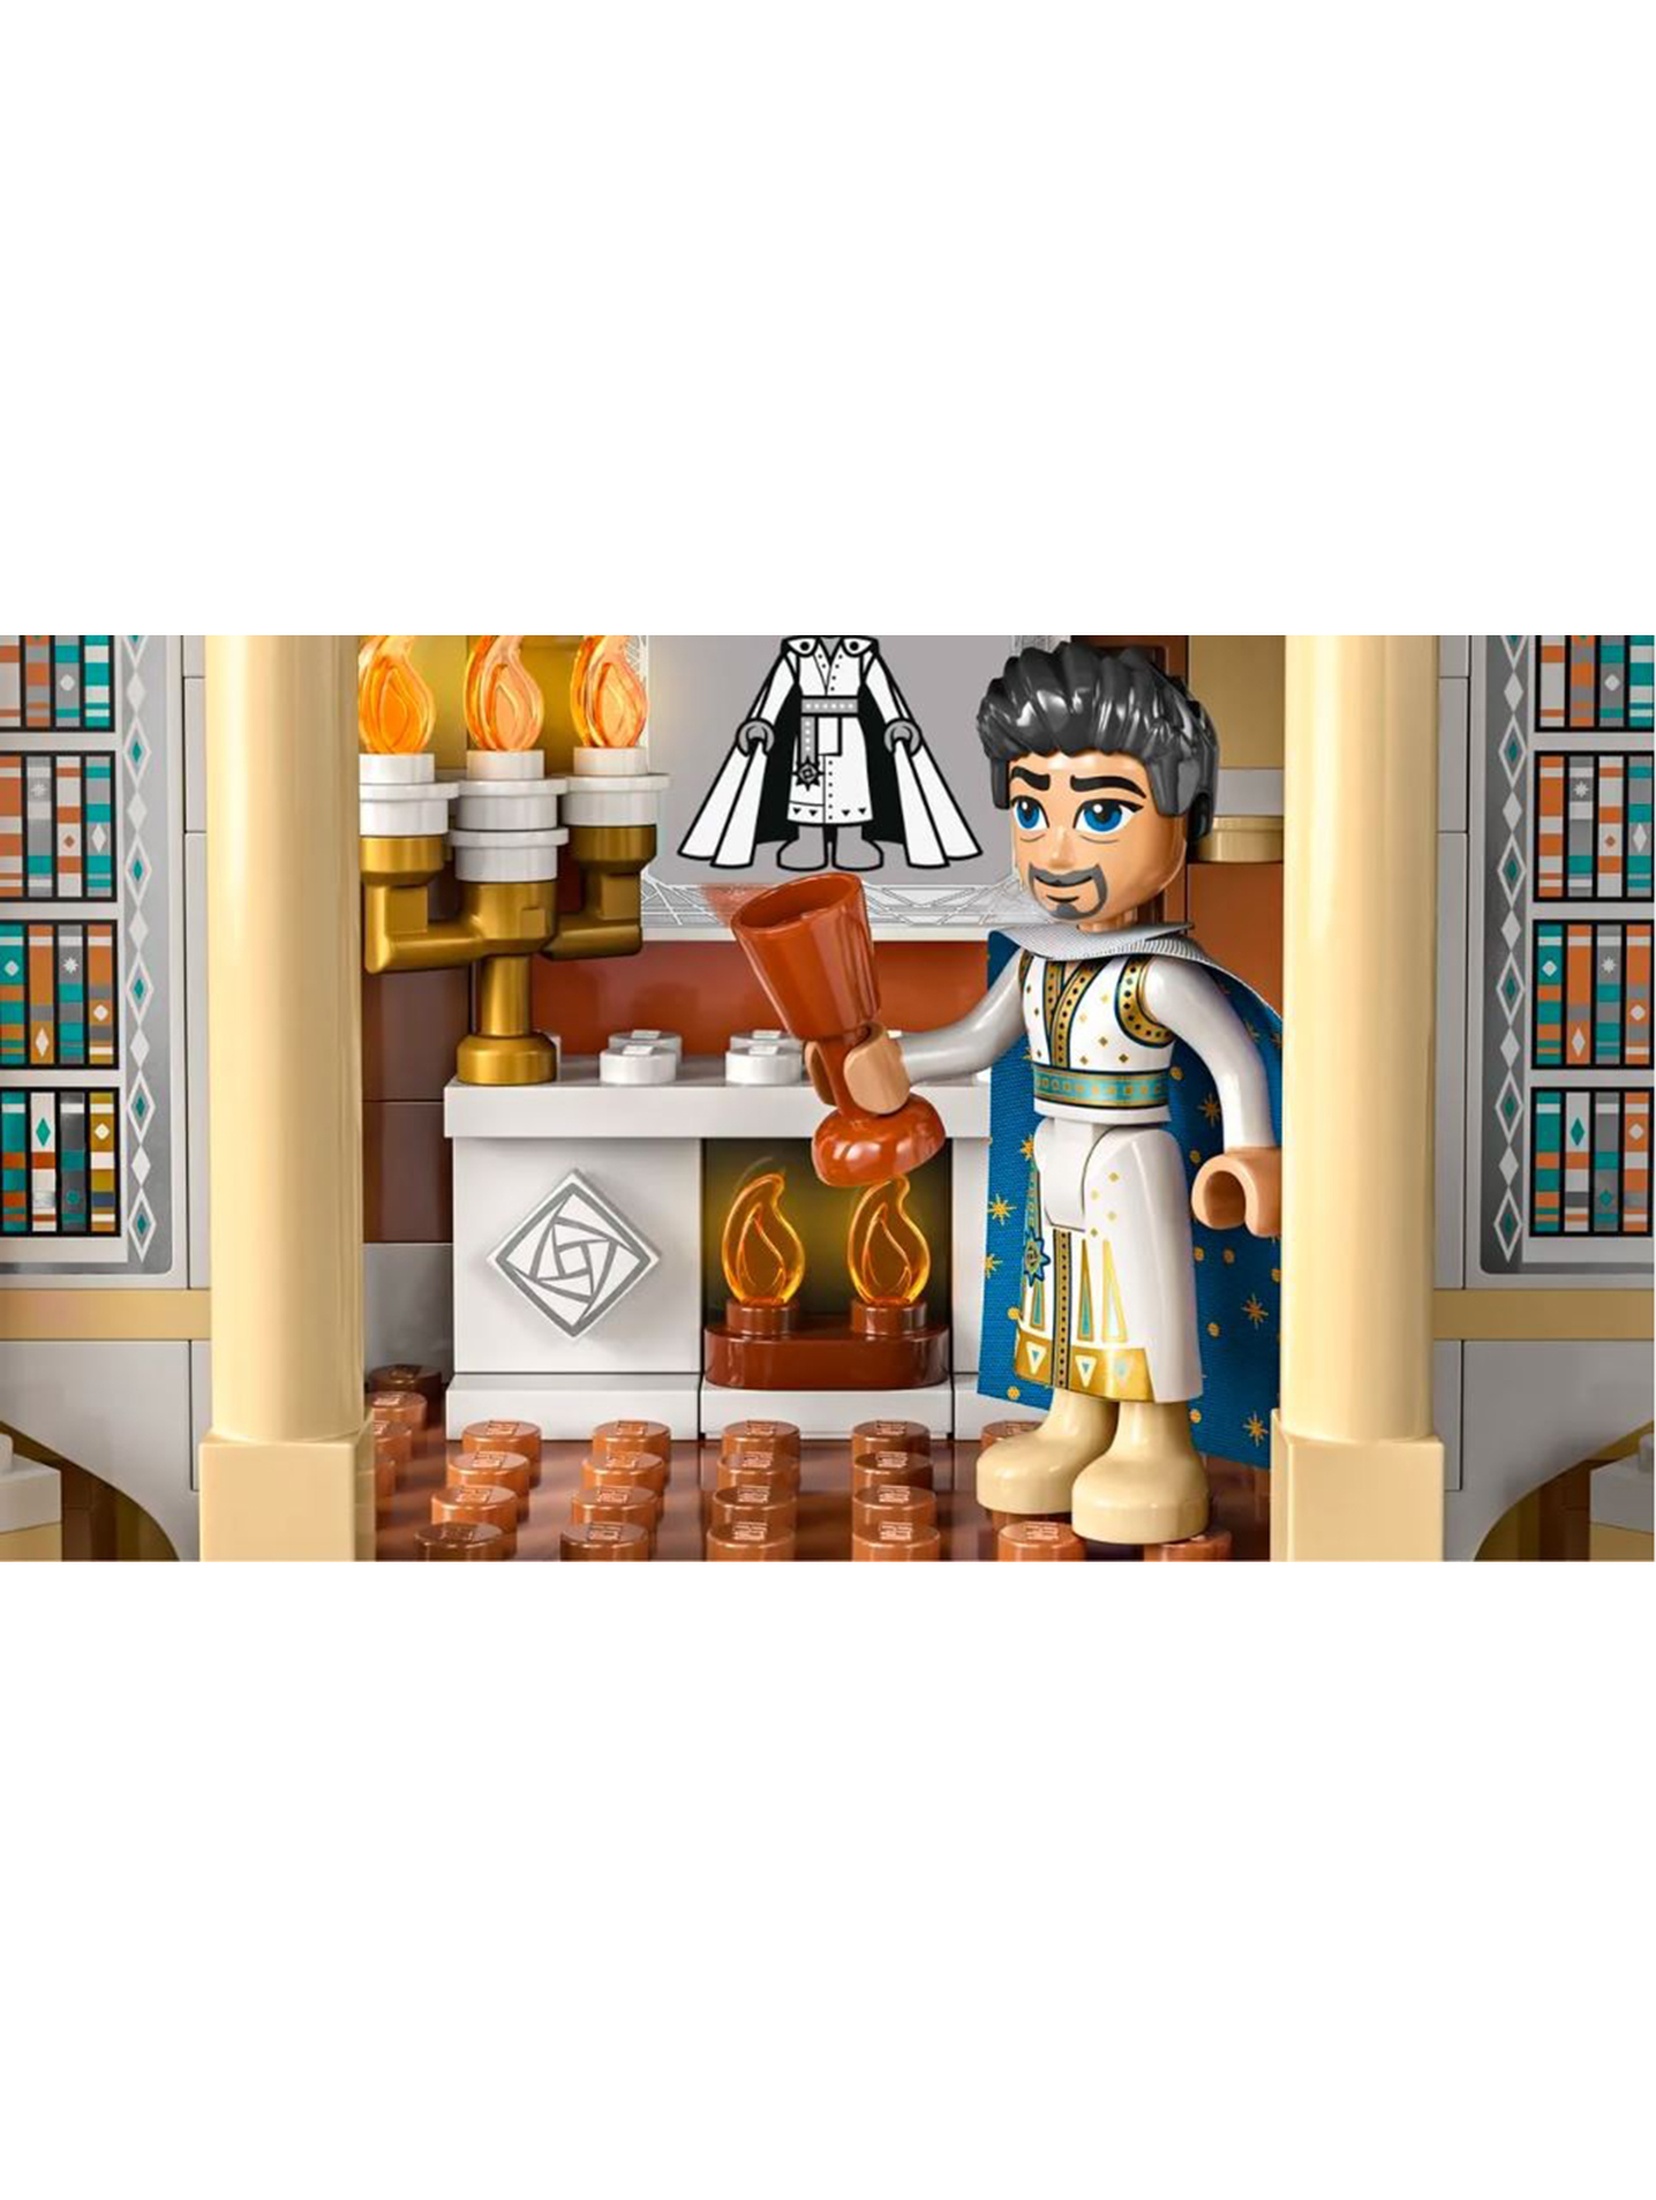 Klocki LEGO Disney Princess 43224 Zamek króla Magnifico - 613 elementów, wiek 7 +